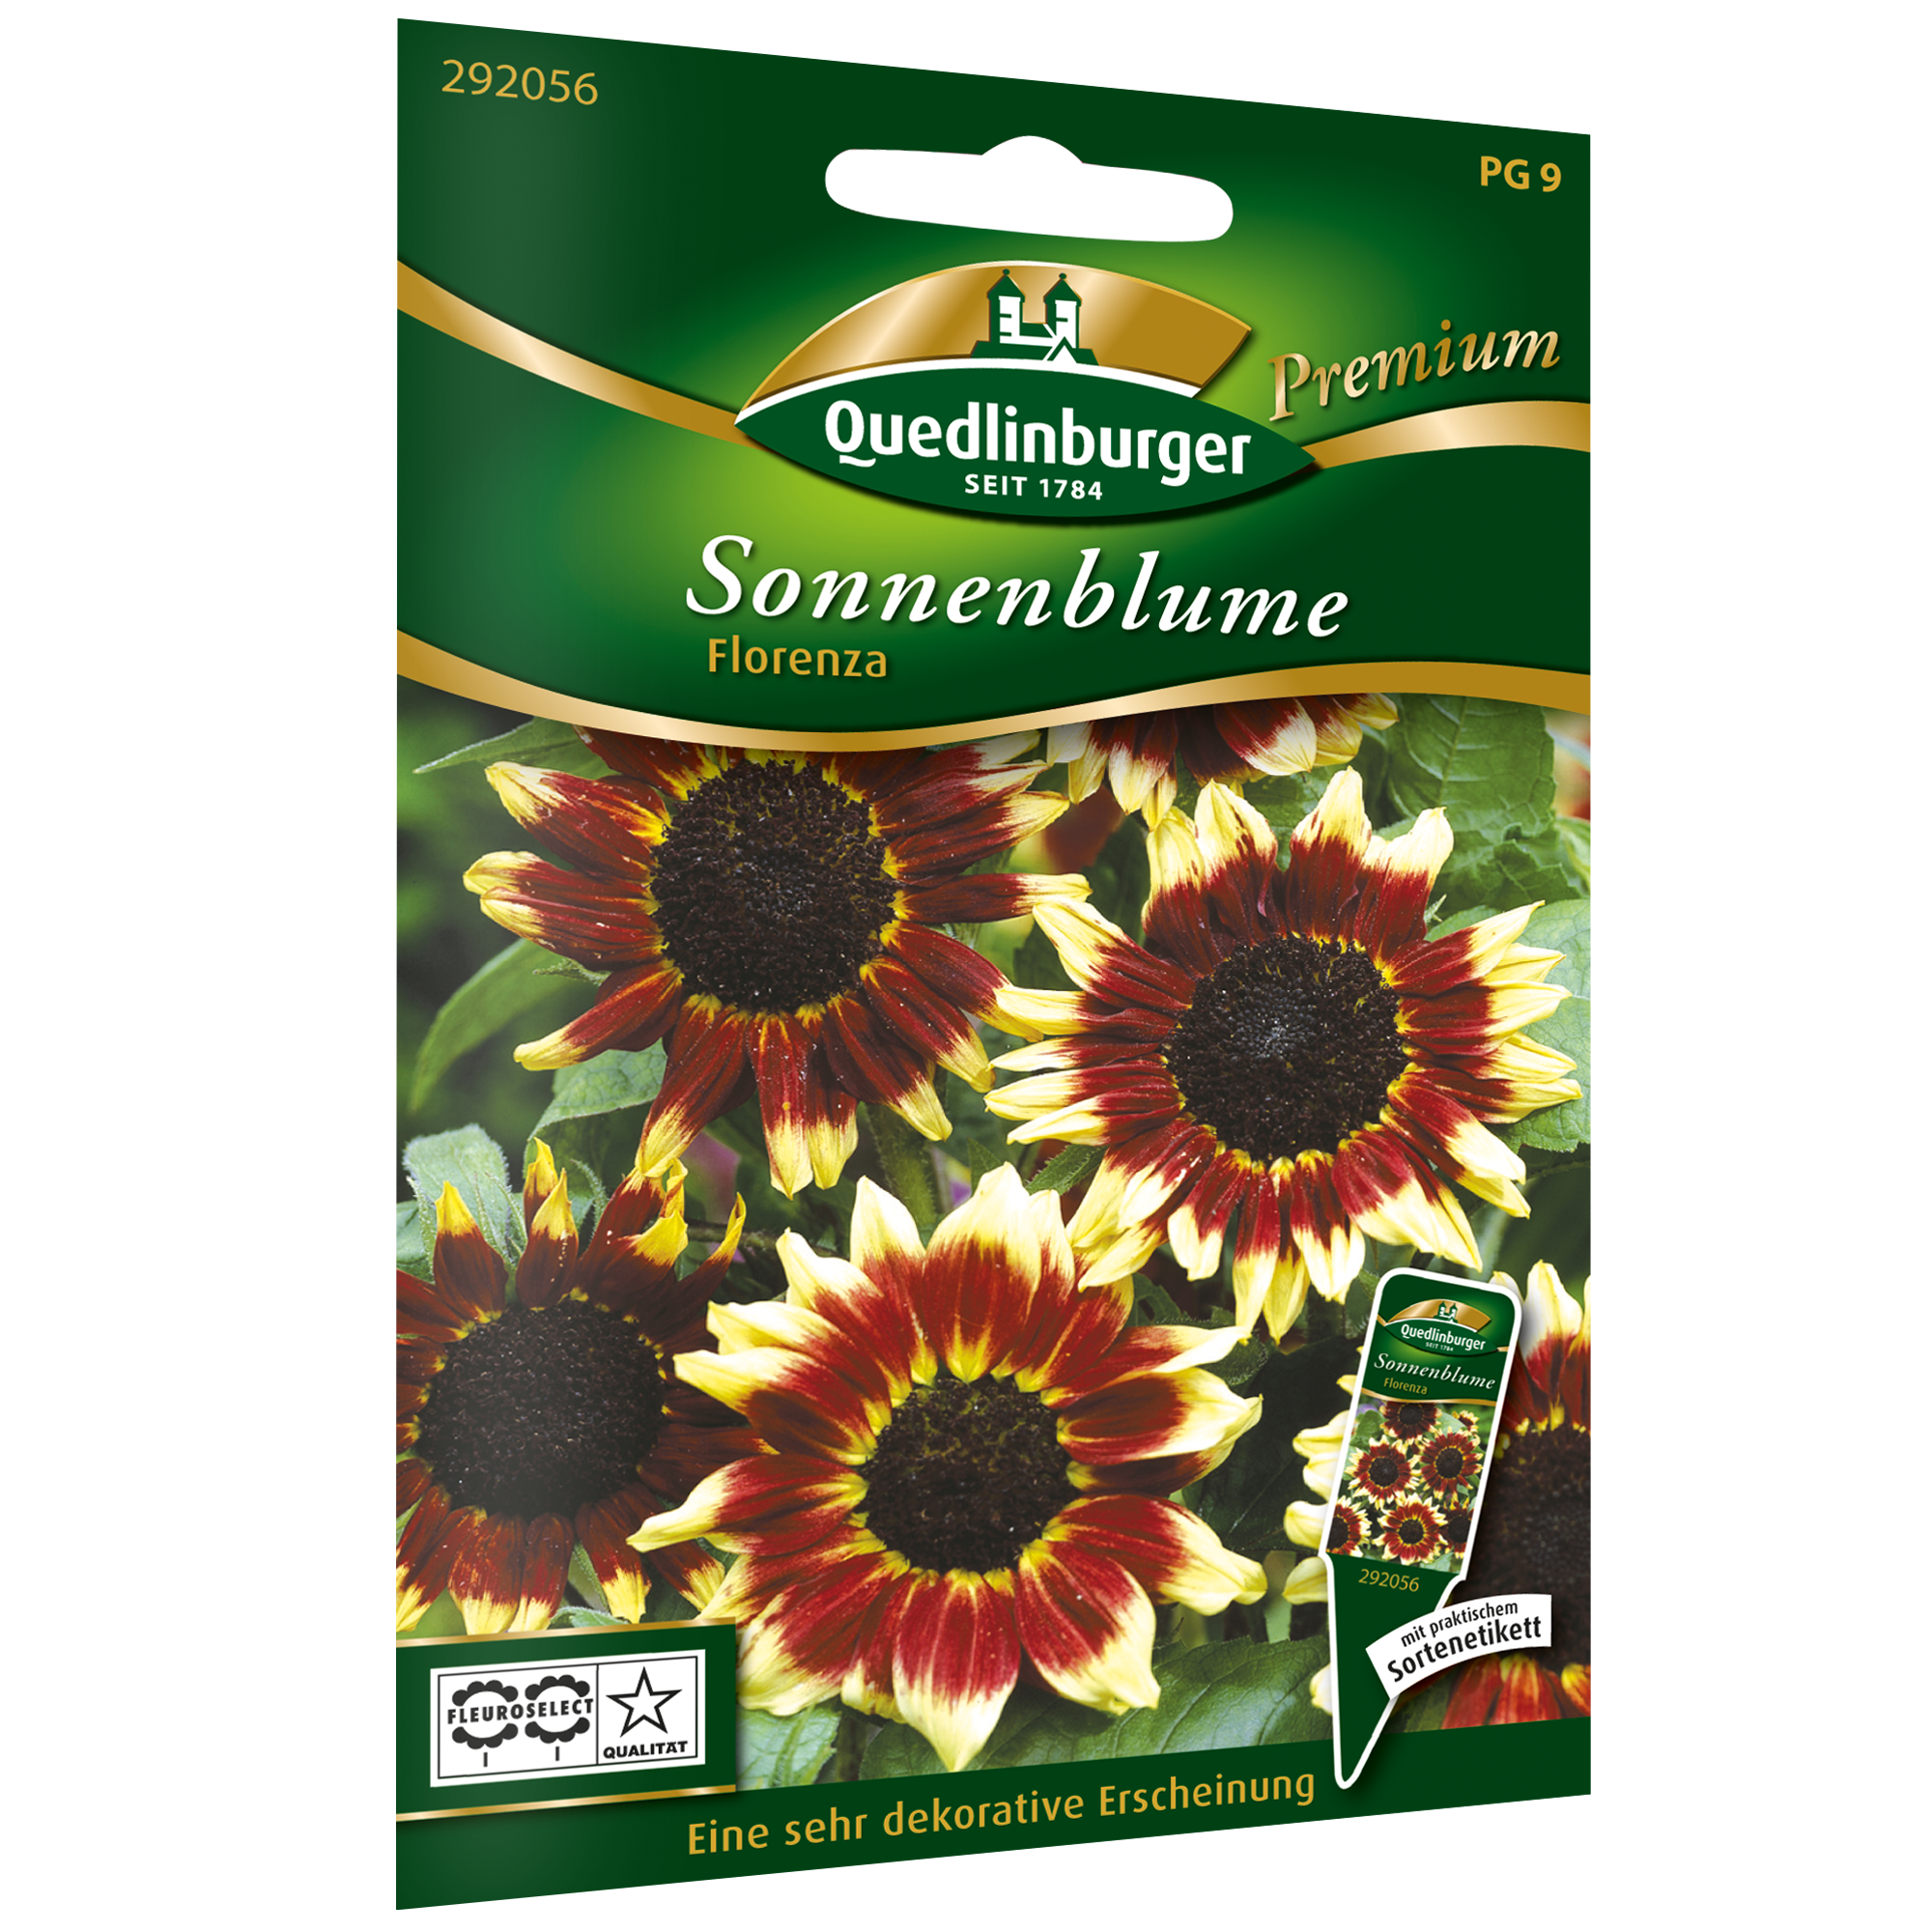 Sonnenblume 'Florenza' + product picture